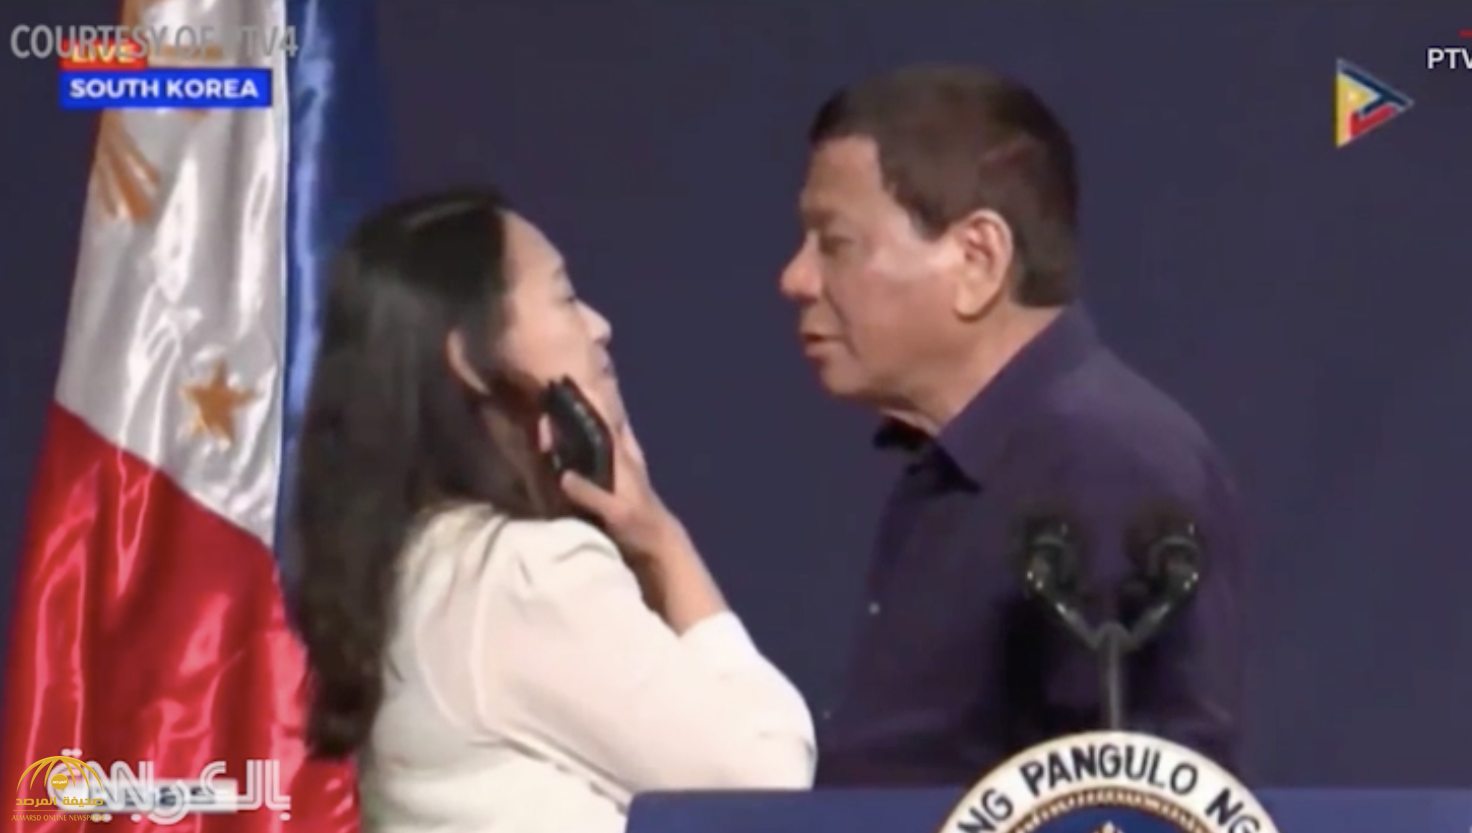 الرئيس الفلبيني يطلب قبلة على الشفاه من فتاة في بث مباشر على الهواء!